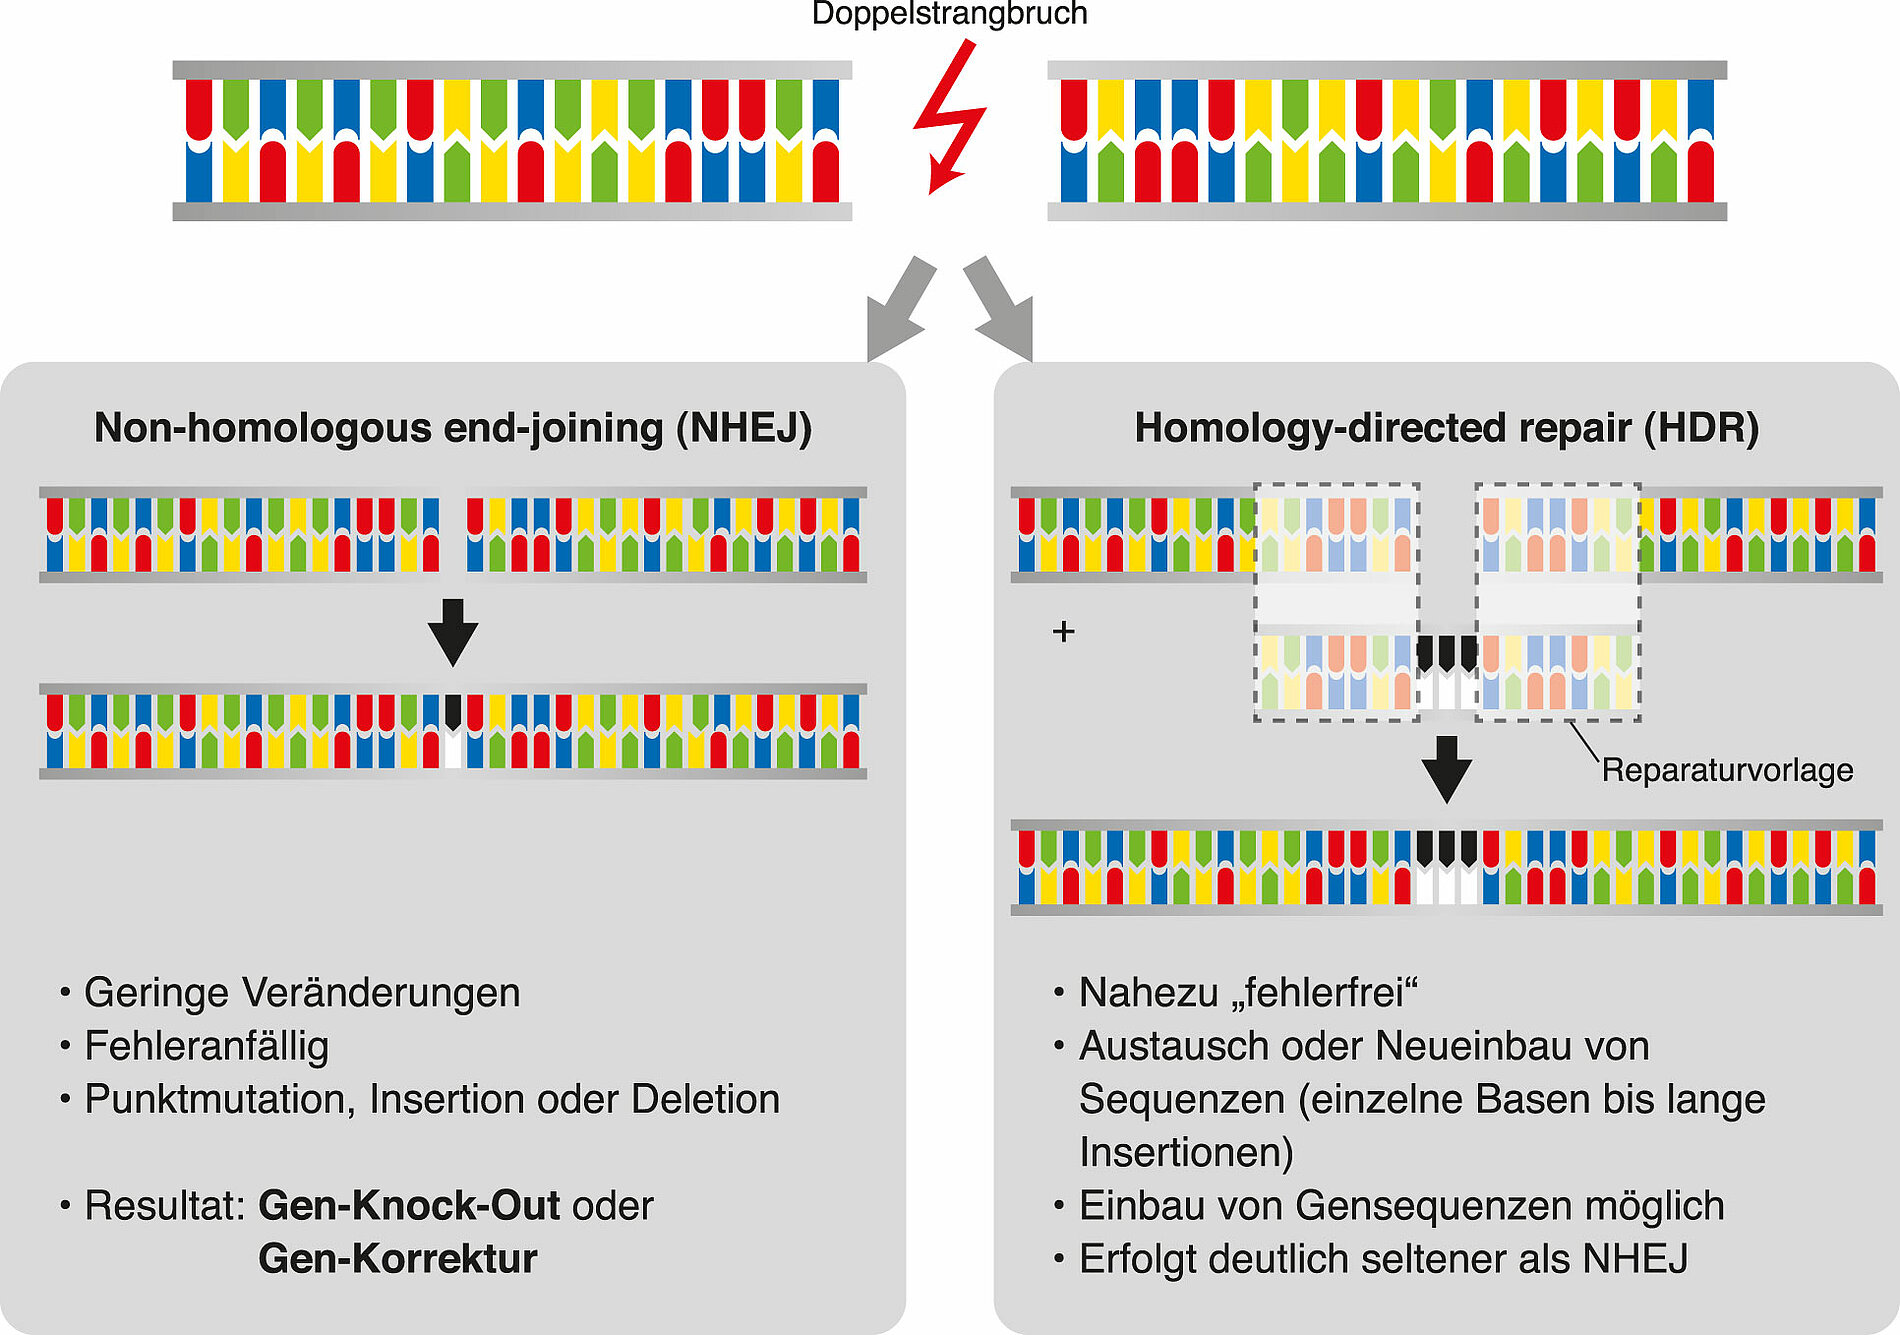 Die Reparatur des Doppelstrangbruches stellt den abschließenden Prozess der Anwendung des Genome Editing dar. 